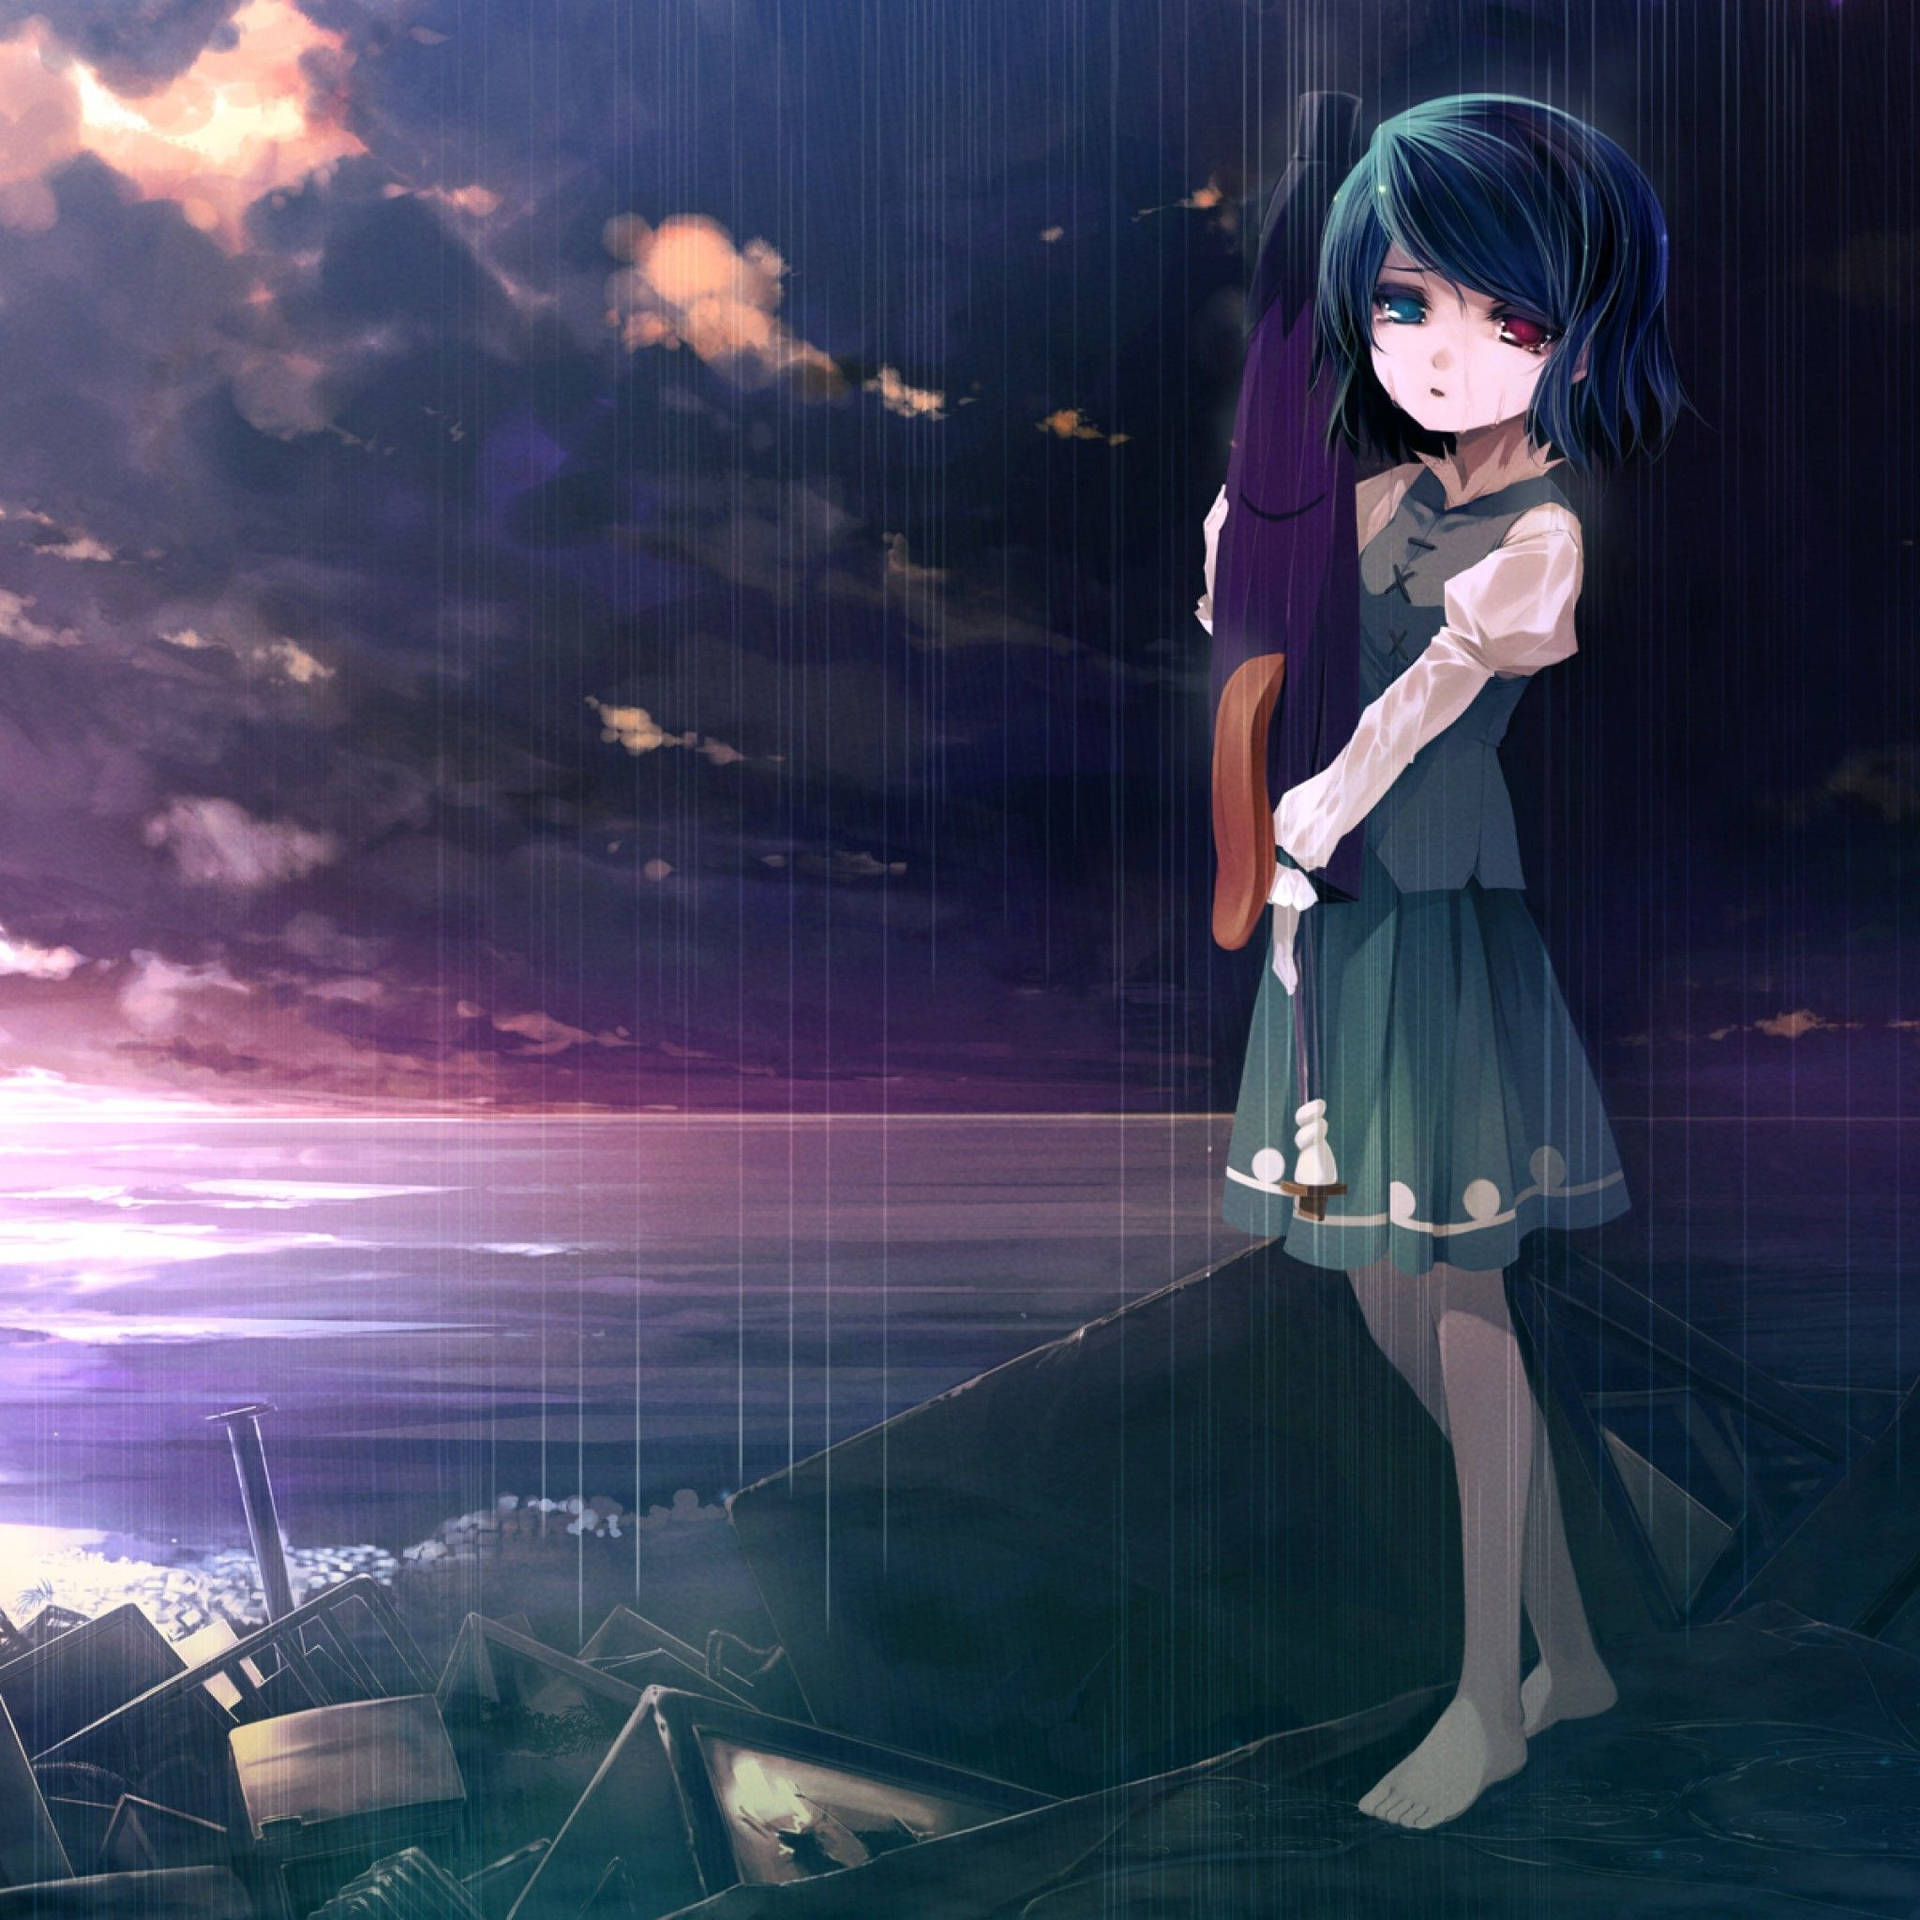 Animemädchen Traurig Alleine Am Ozean Wallpaper